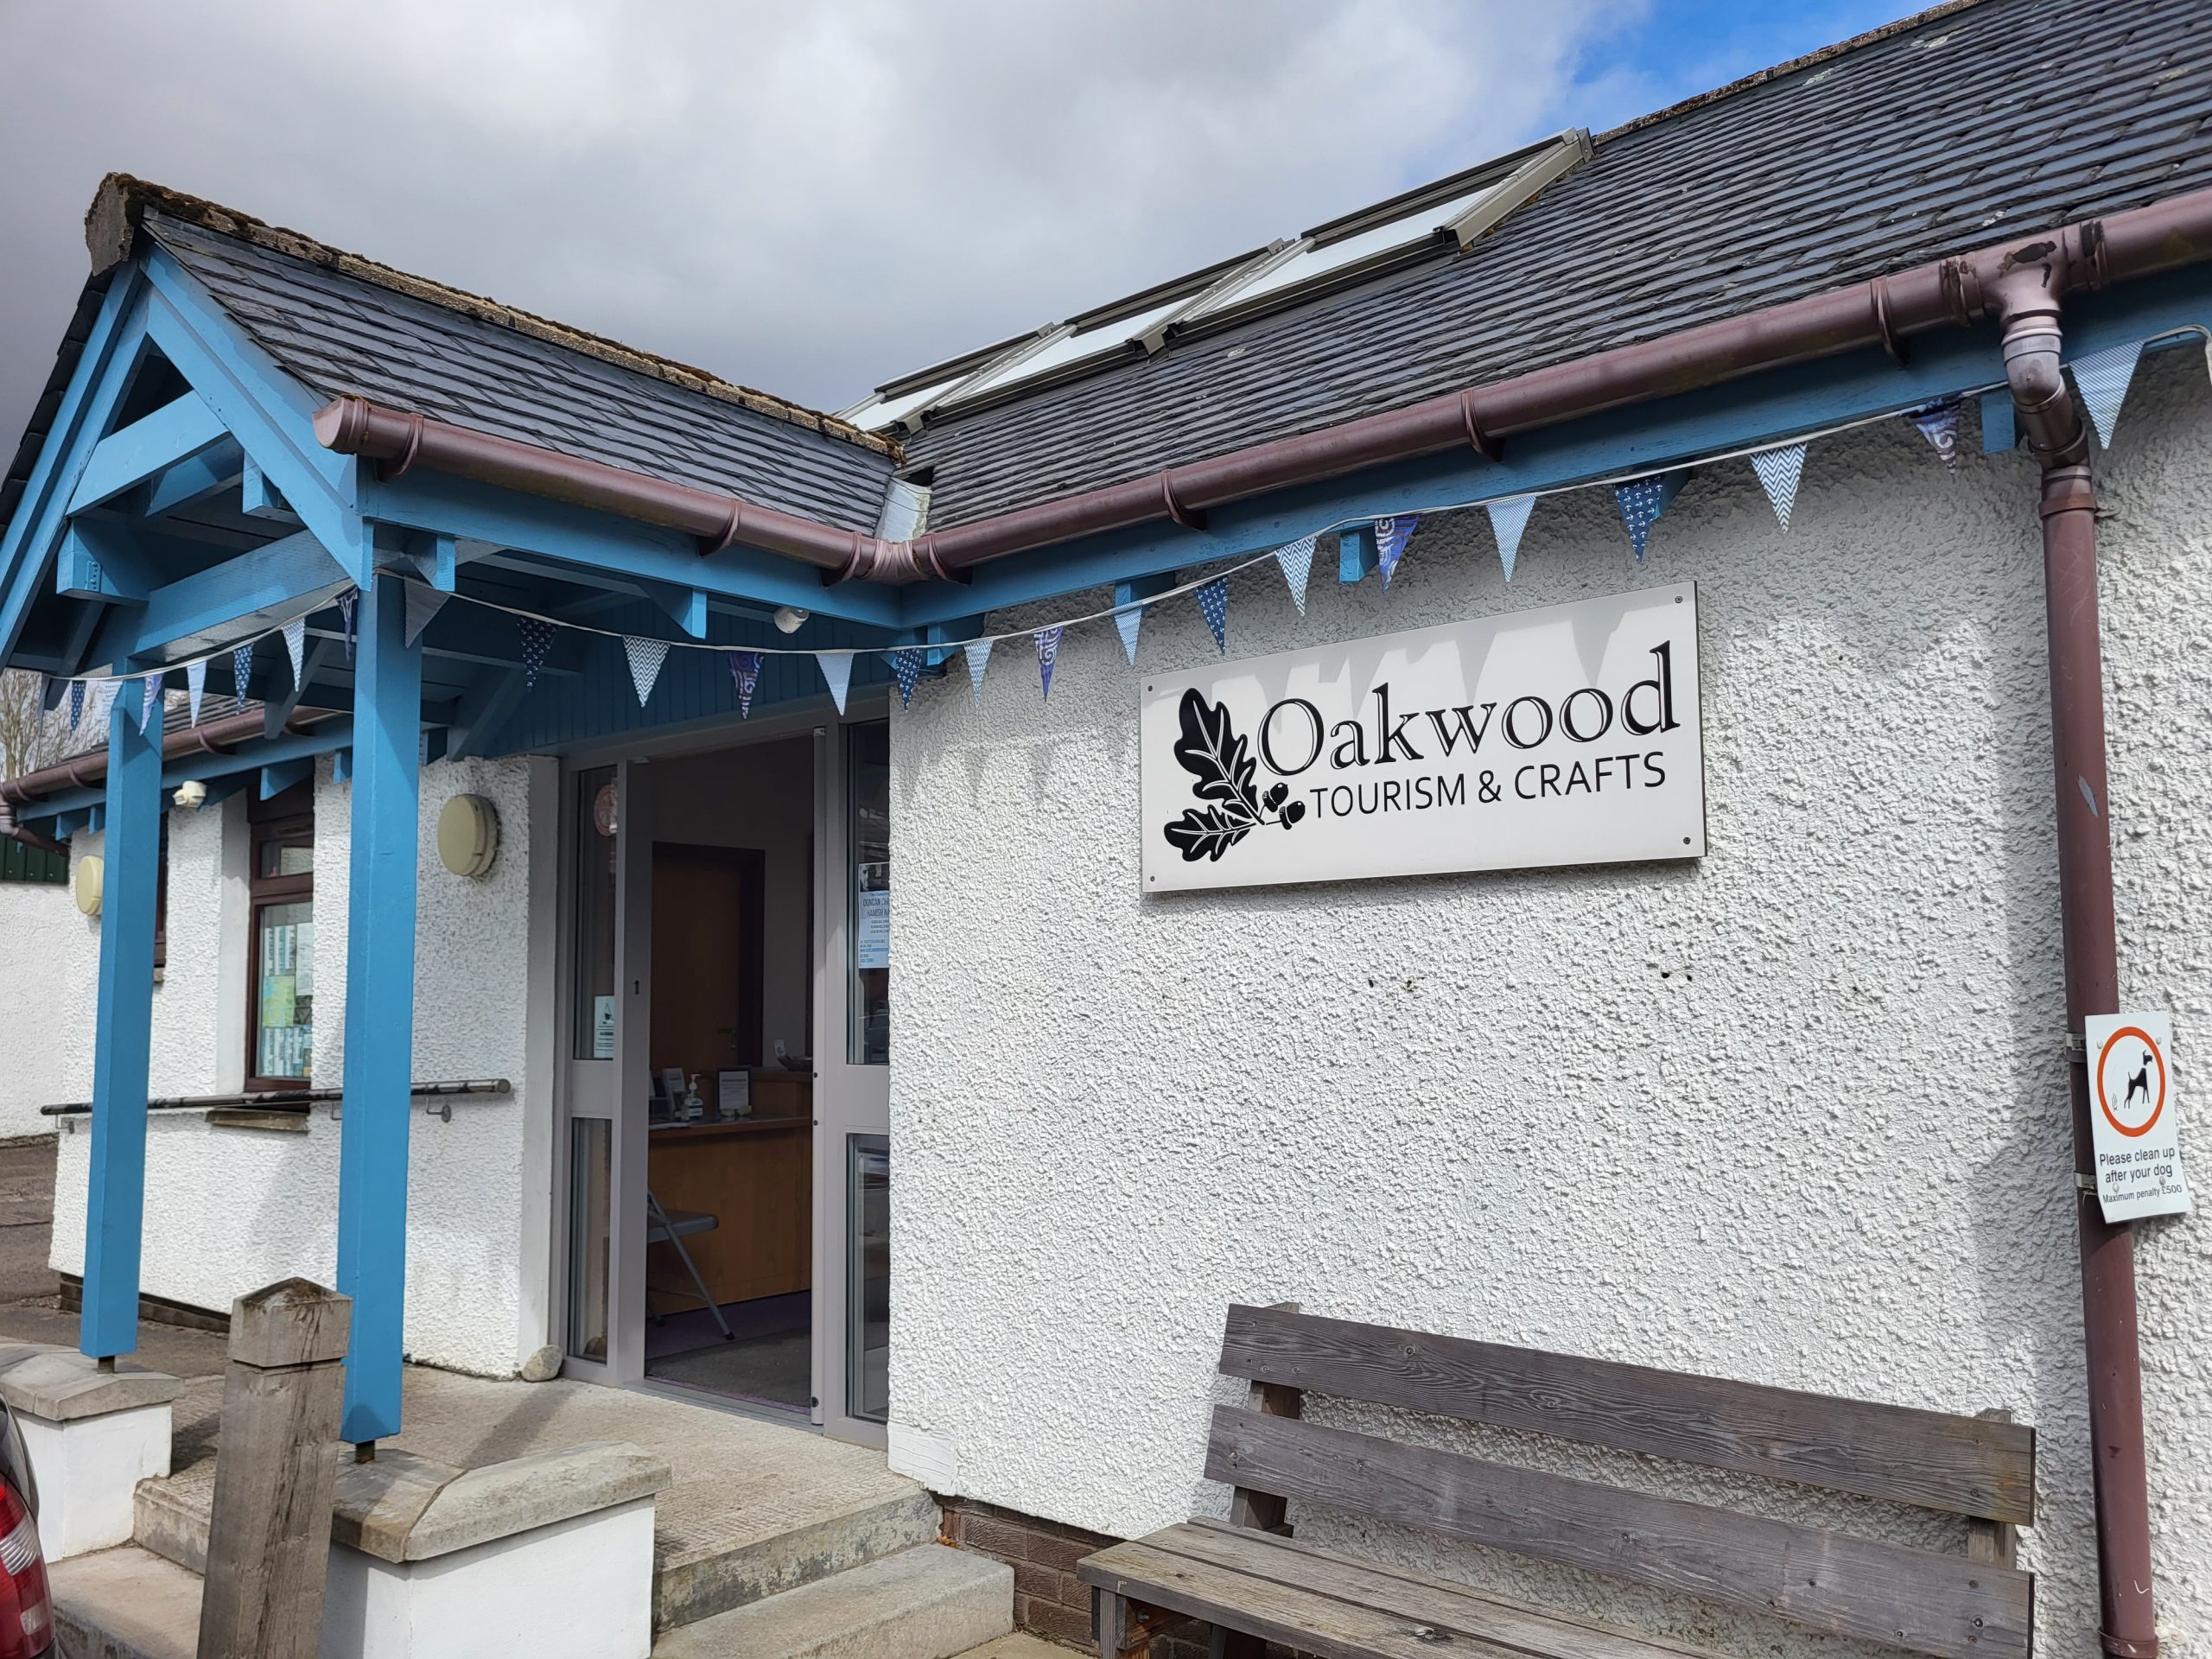 Oakwood Community Craft Shop